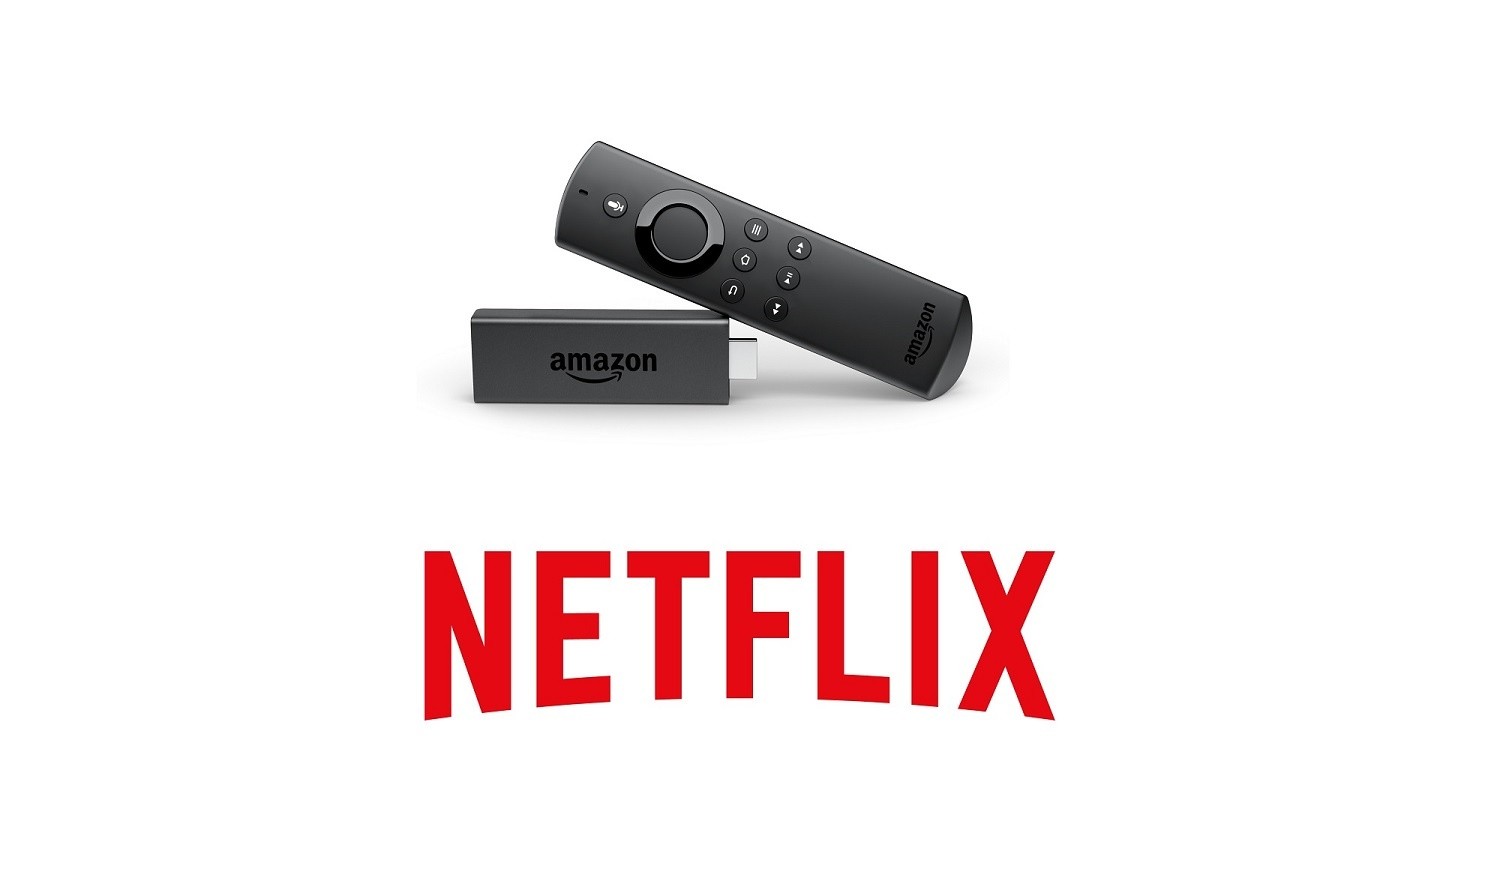 Netflix on Amazon Firestick